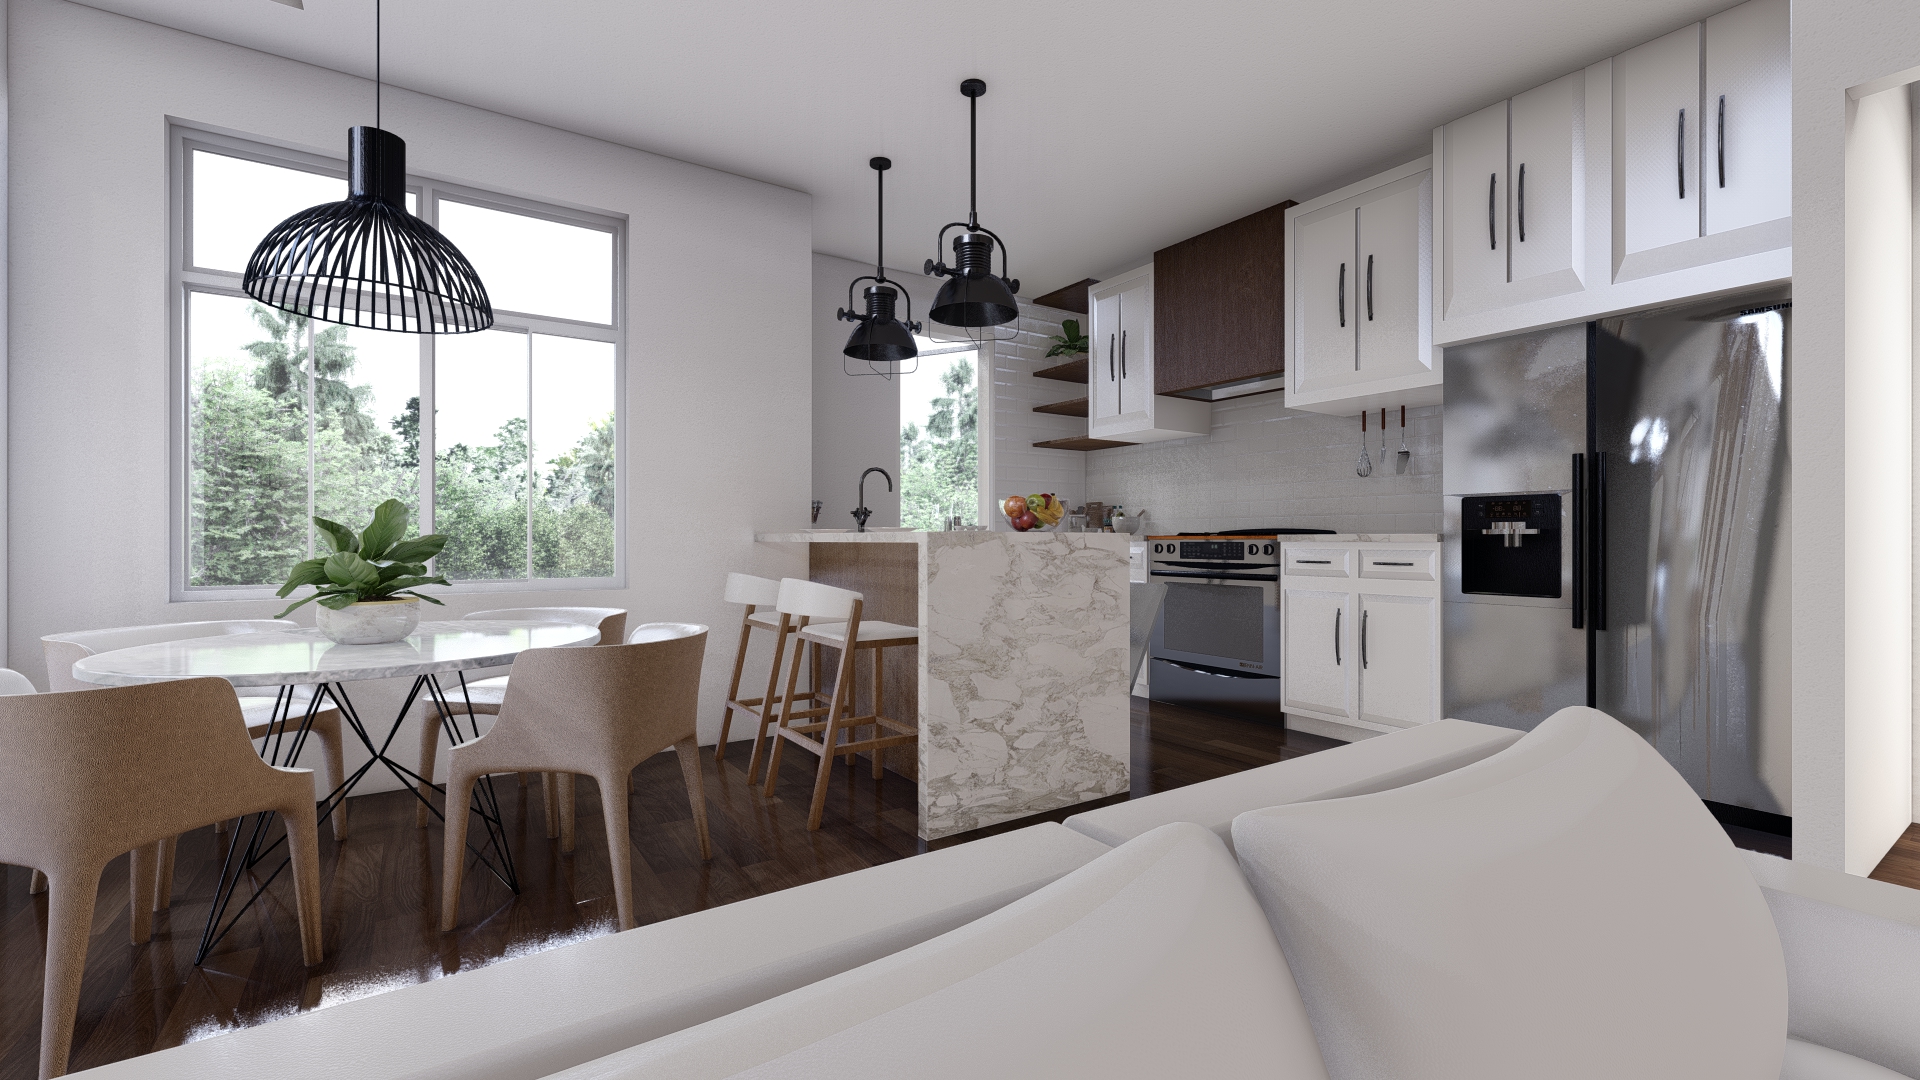 Interior designer's concept of an Osprey Ridge townhouse kitchen.